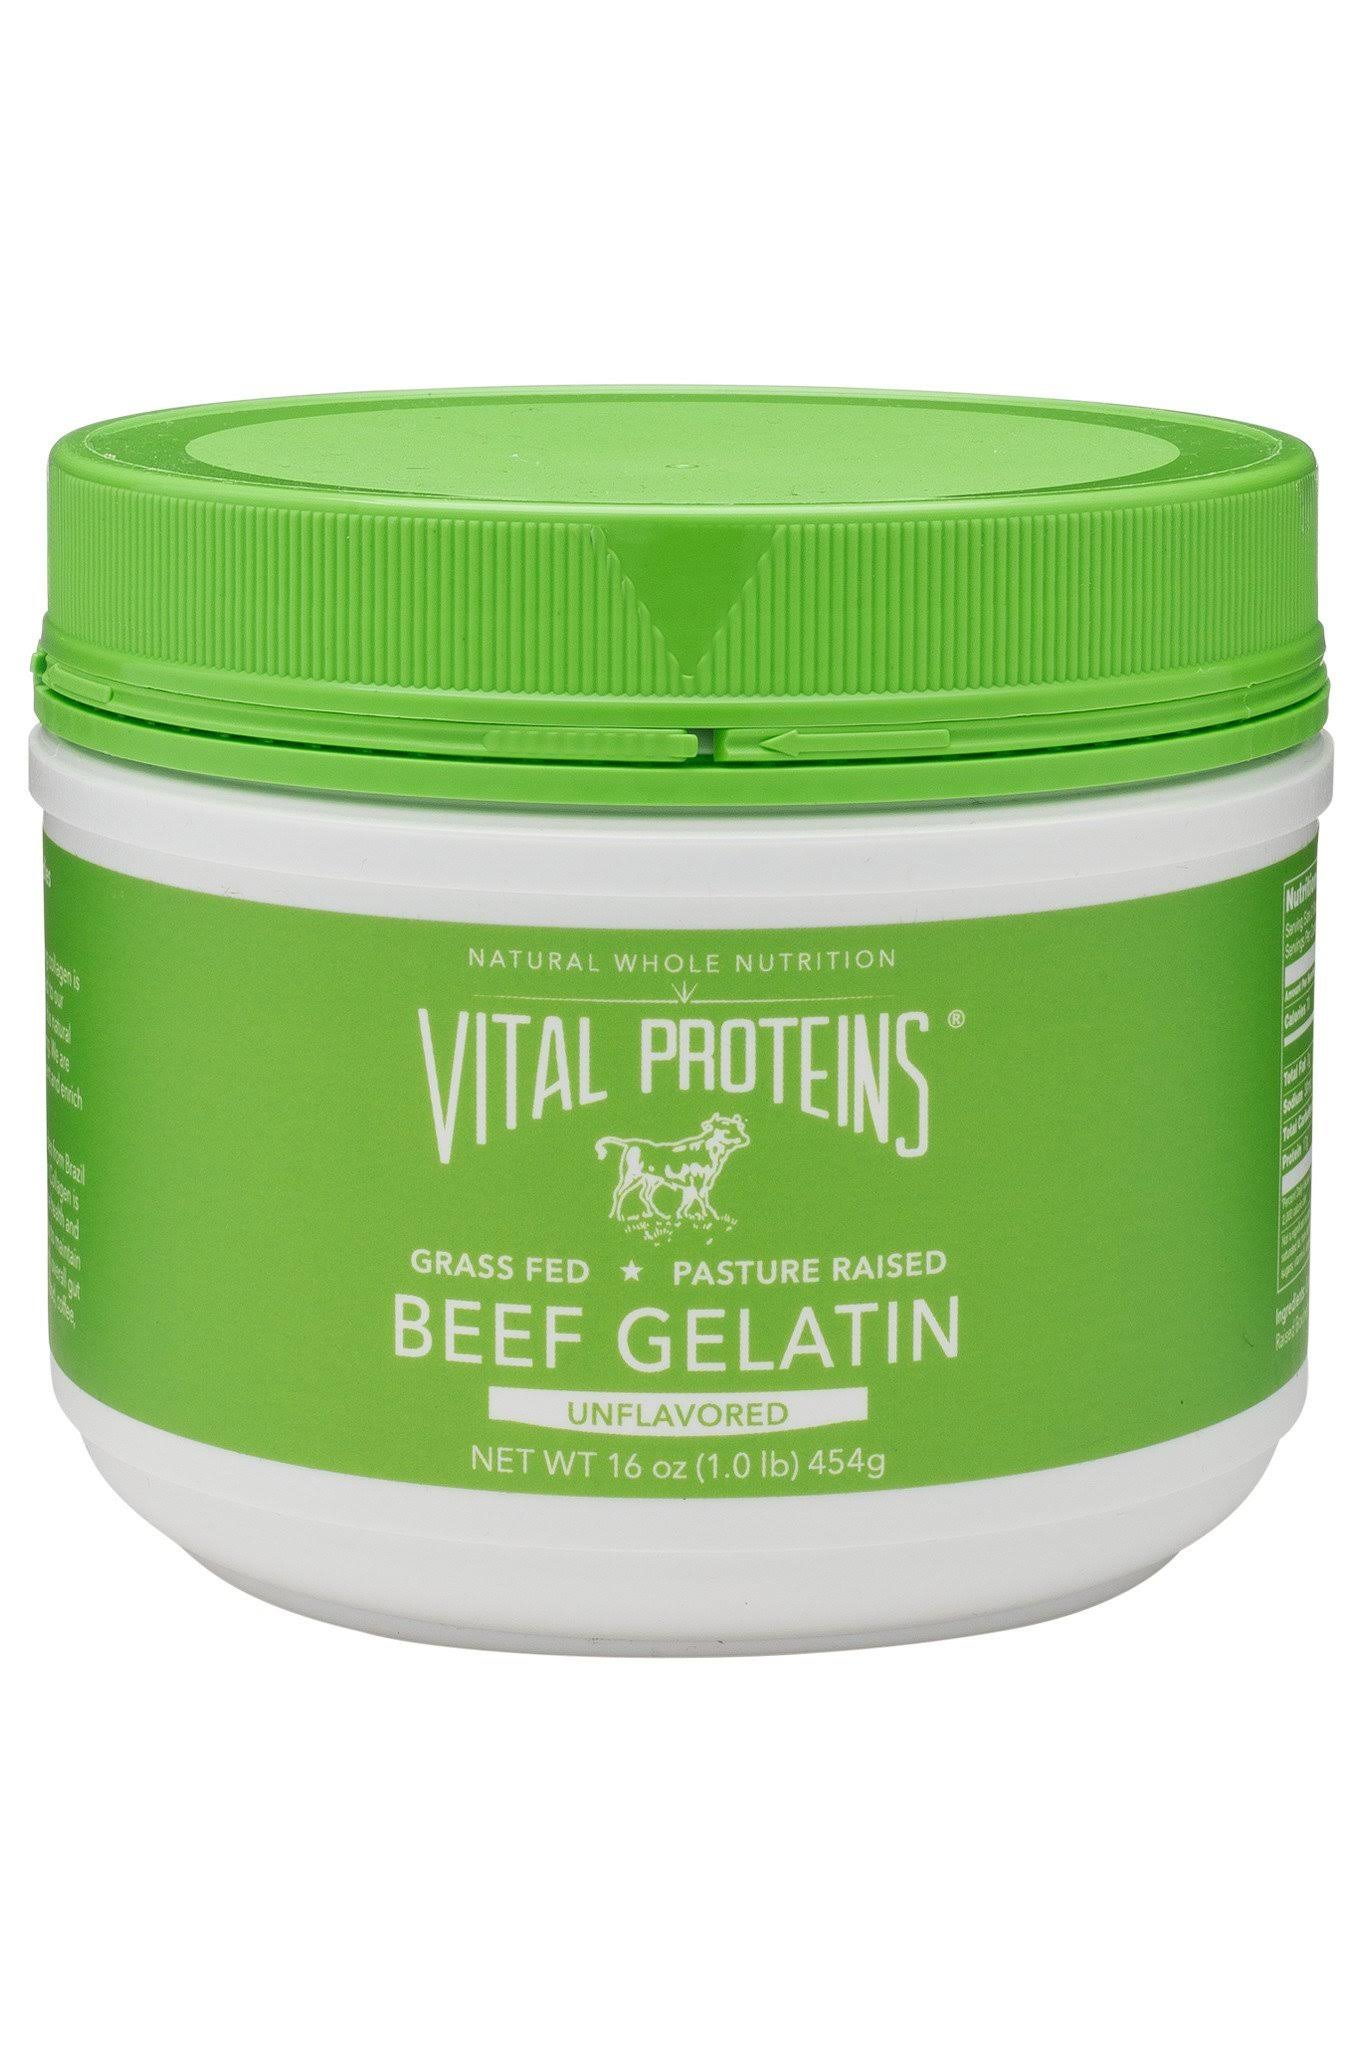 Vital Proteins Beef Gelatin Protein Dietary Supplement - Unflavored, 454g